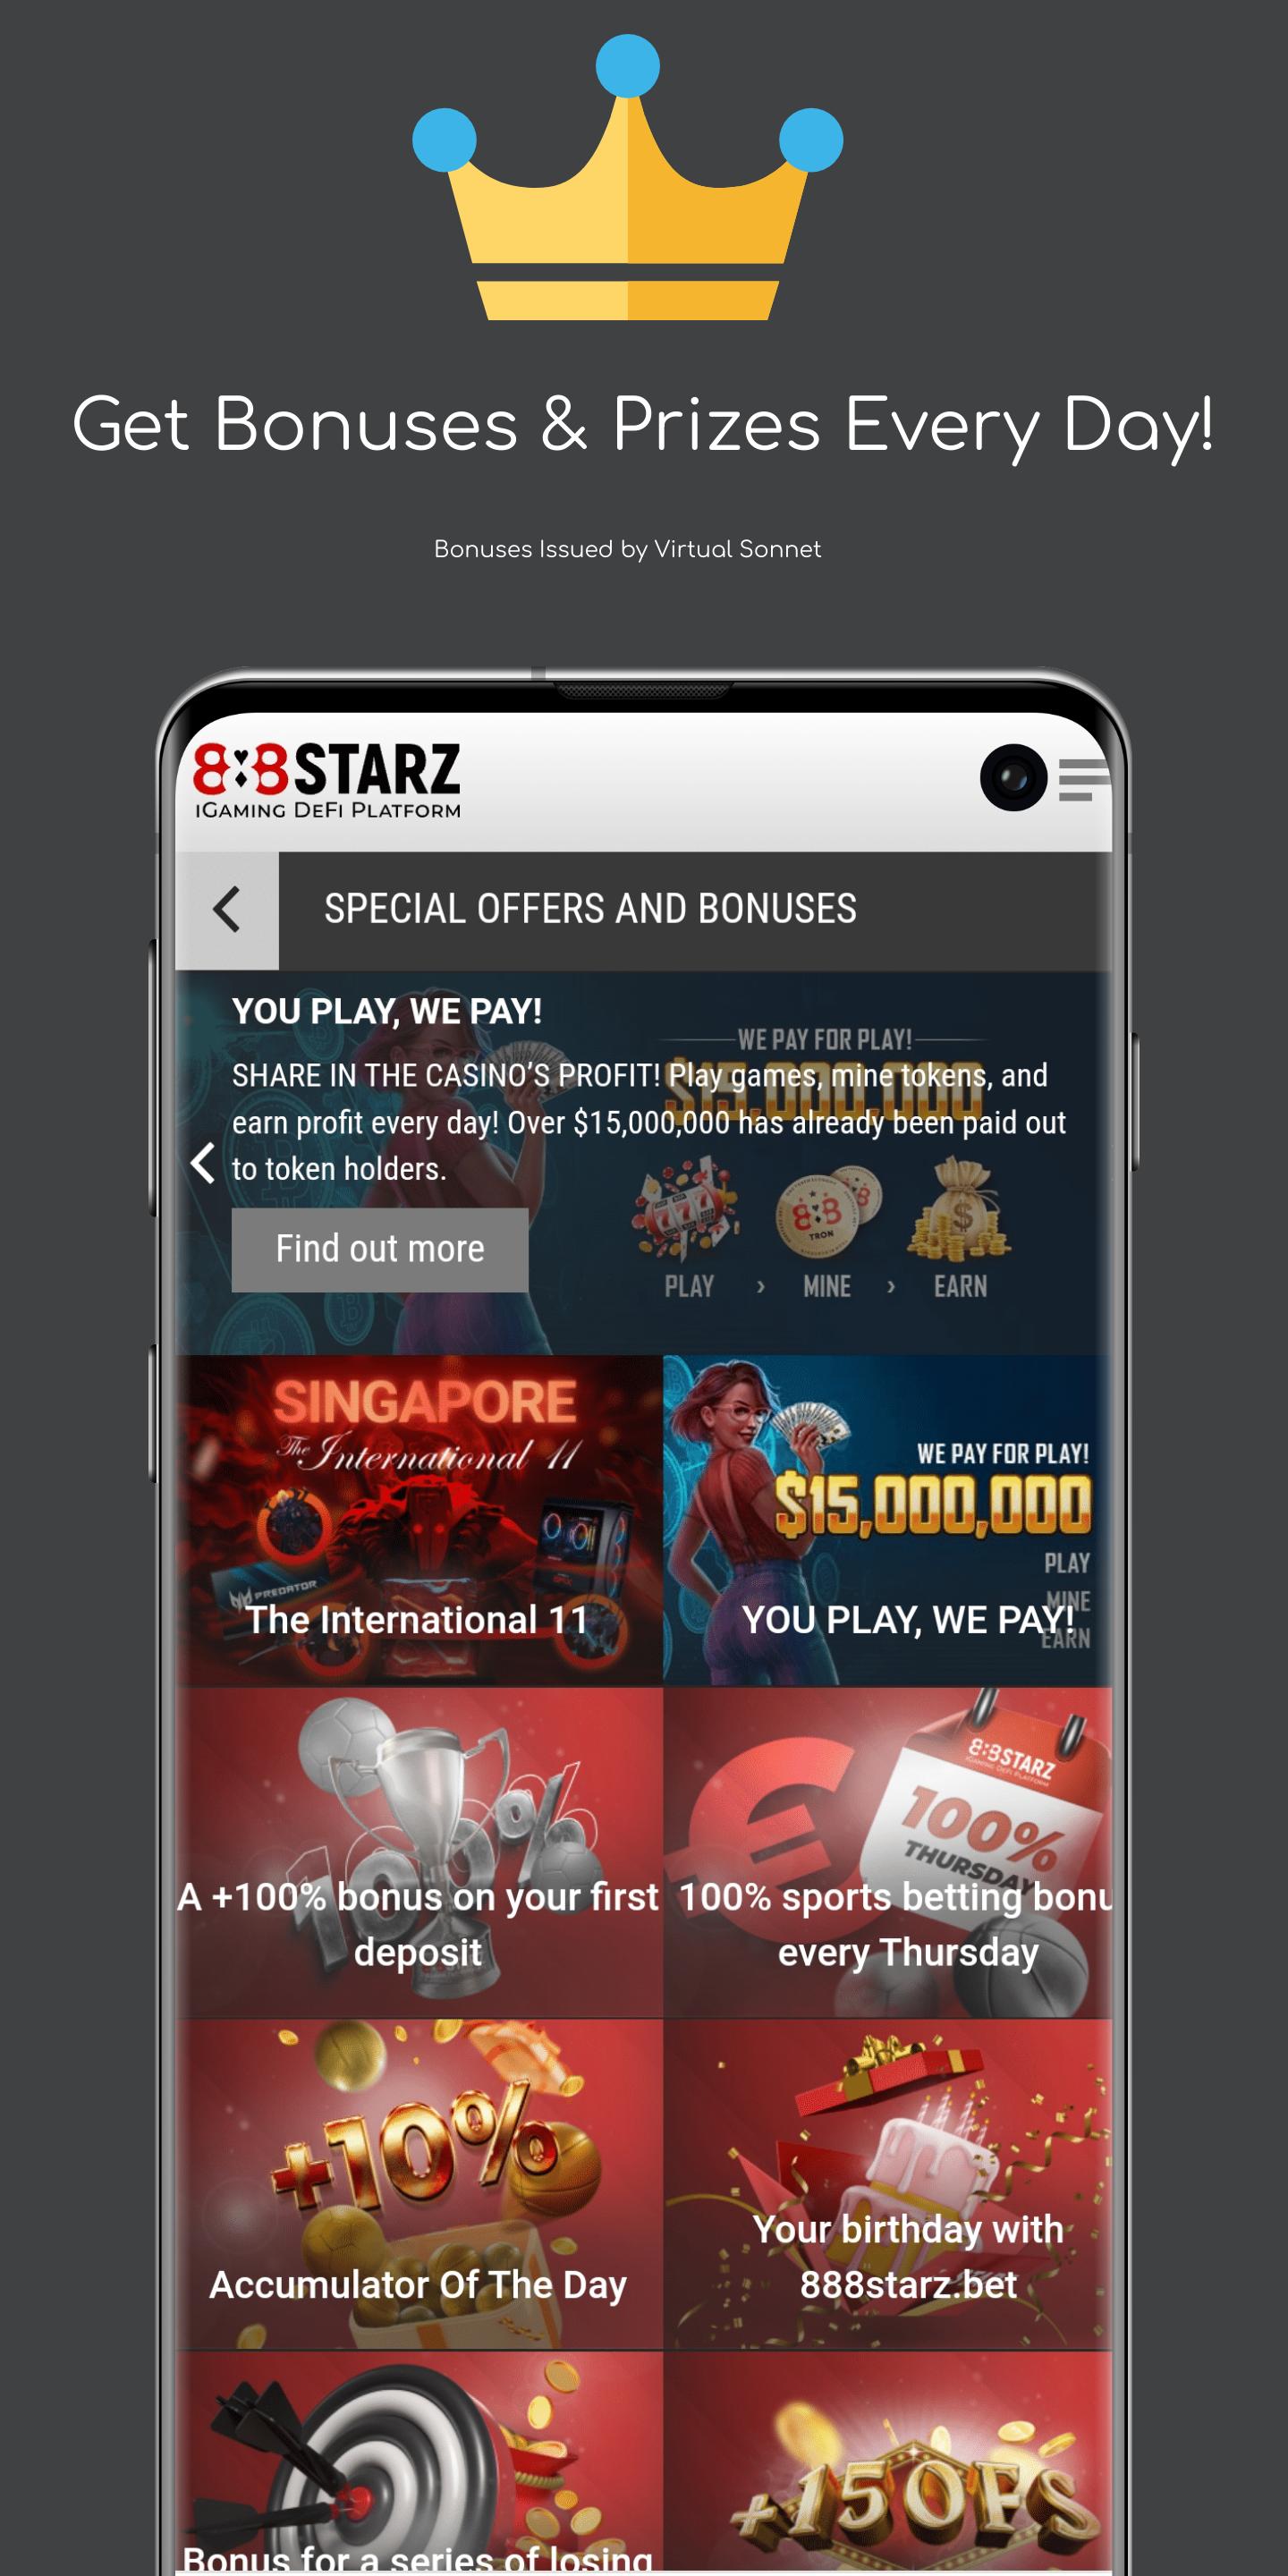 888 starz 888starz shop 888 starz net